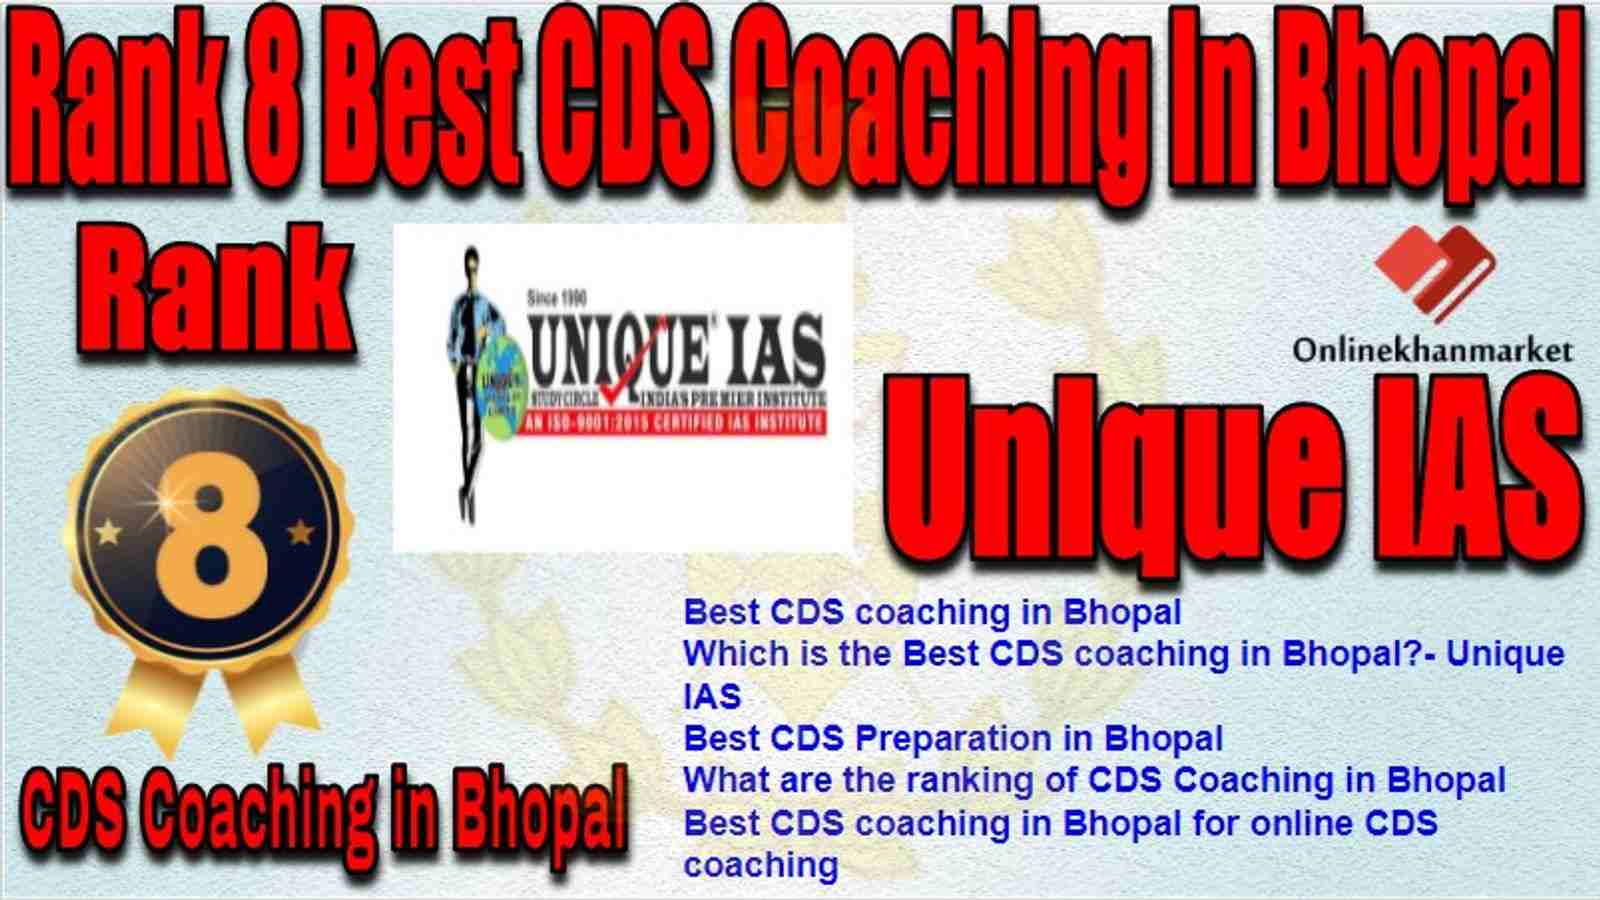 Rank 8 Best CDS Coaching in bhopal